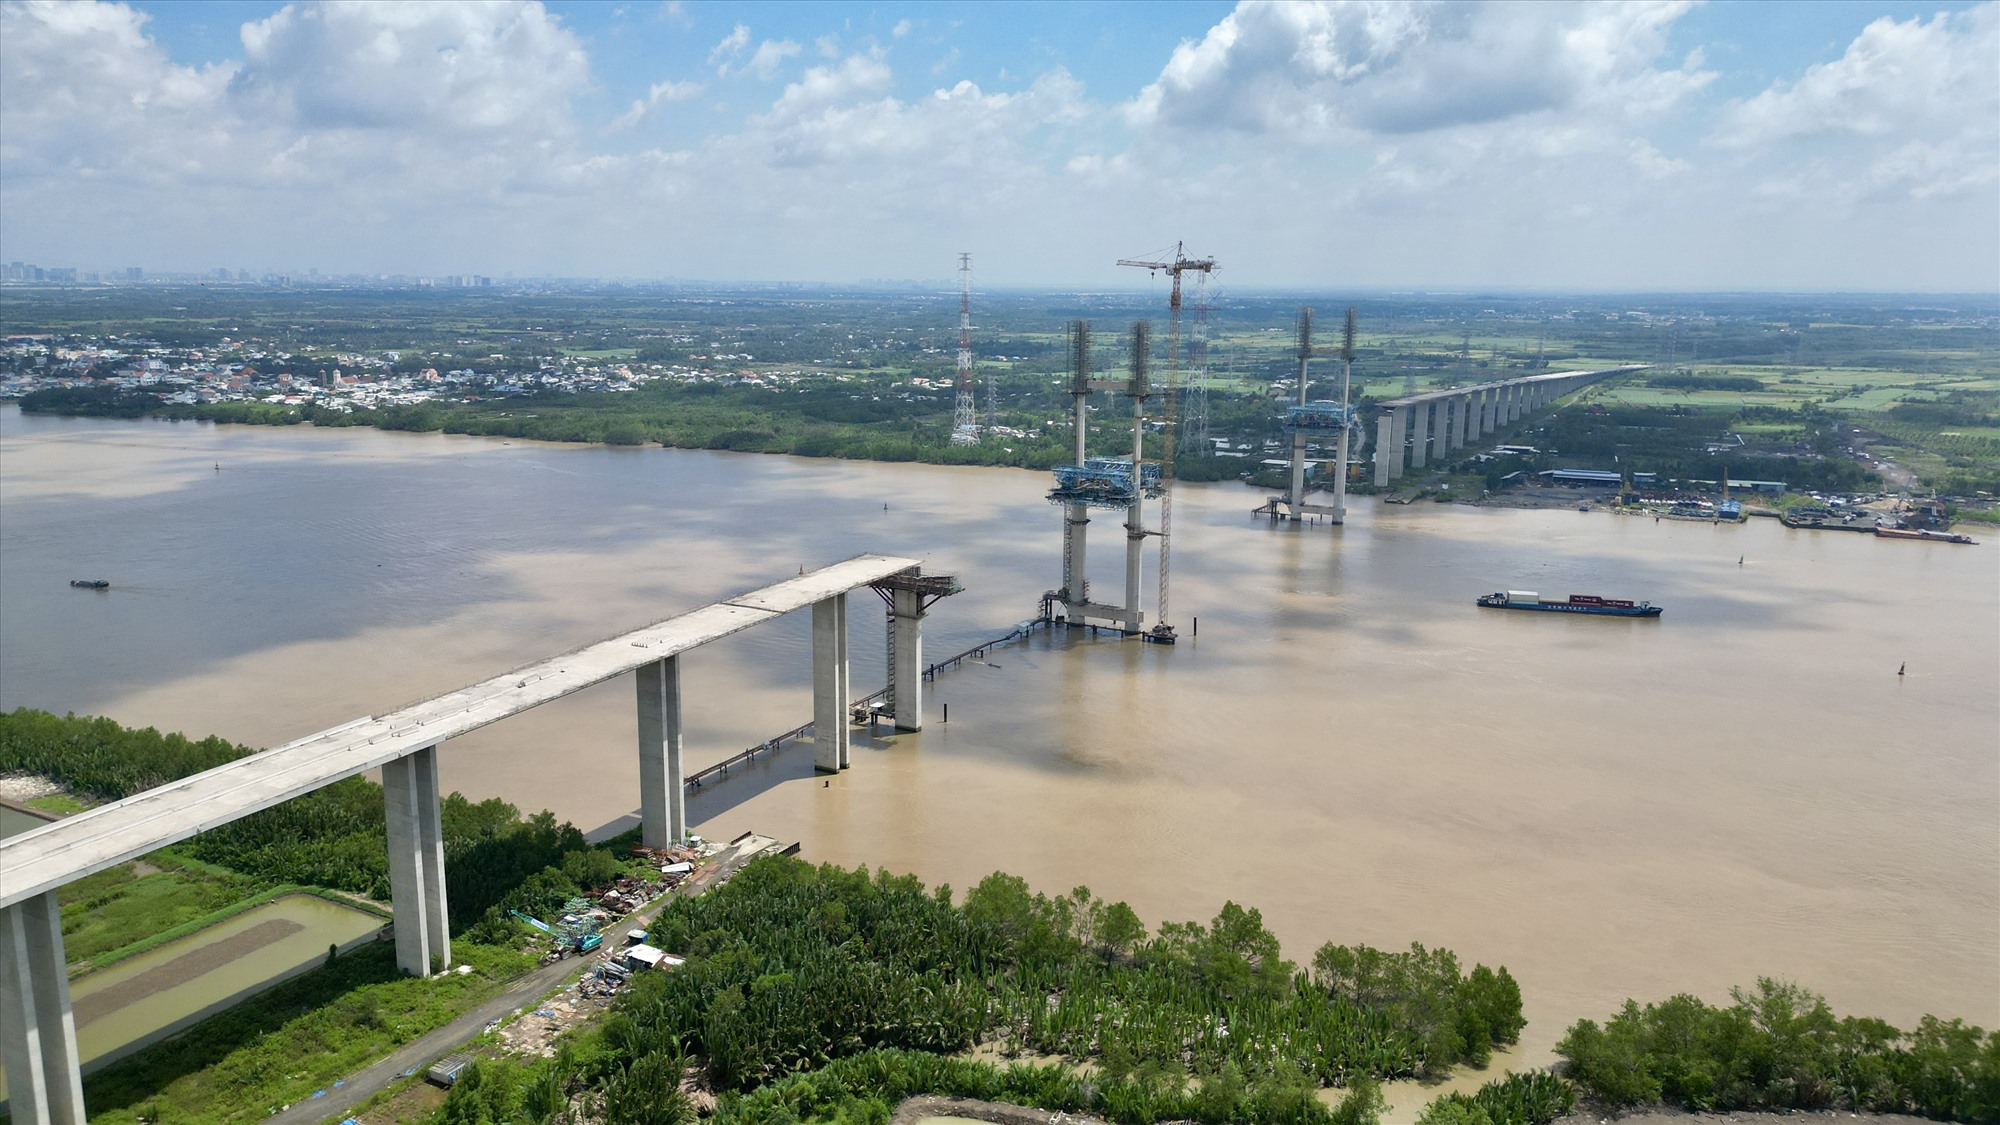 Sau 8 năm khởi công, toàn bộ dự án cầu Phước Khánh với tổng mức đầu tư gần 2.900 tỉ đồng đã đạt 80% tiến độ. Công trình bị tạm ngưng thi công từ tháng 9.2019 với cùng lý do như cầu Bình Khánh. Phần cầu cạn thuộc dự án phía TPHCM và Đồng Nai cơ bản hoàn thành